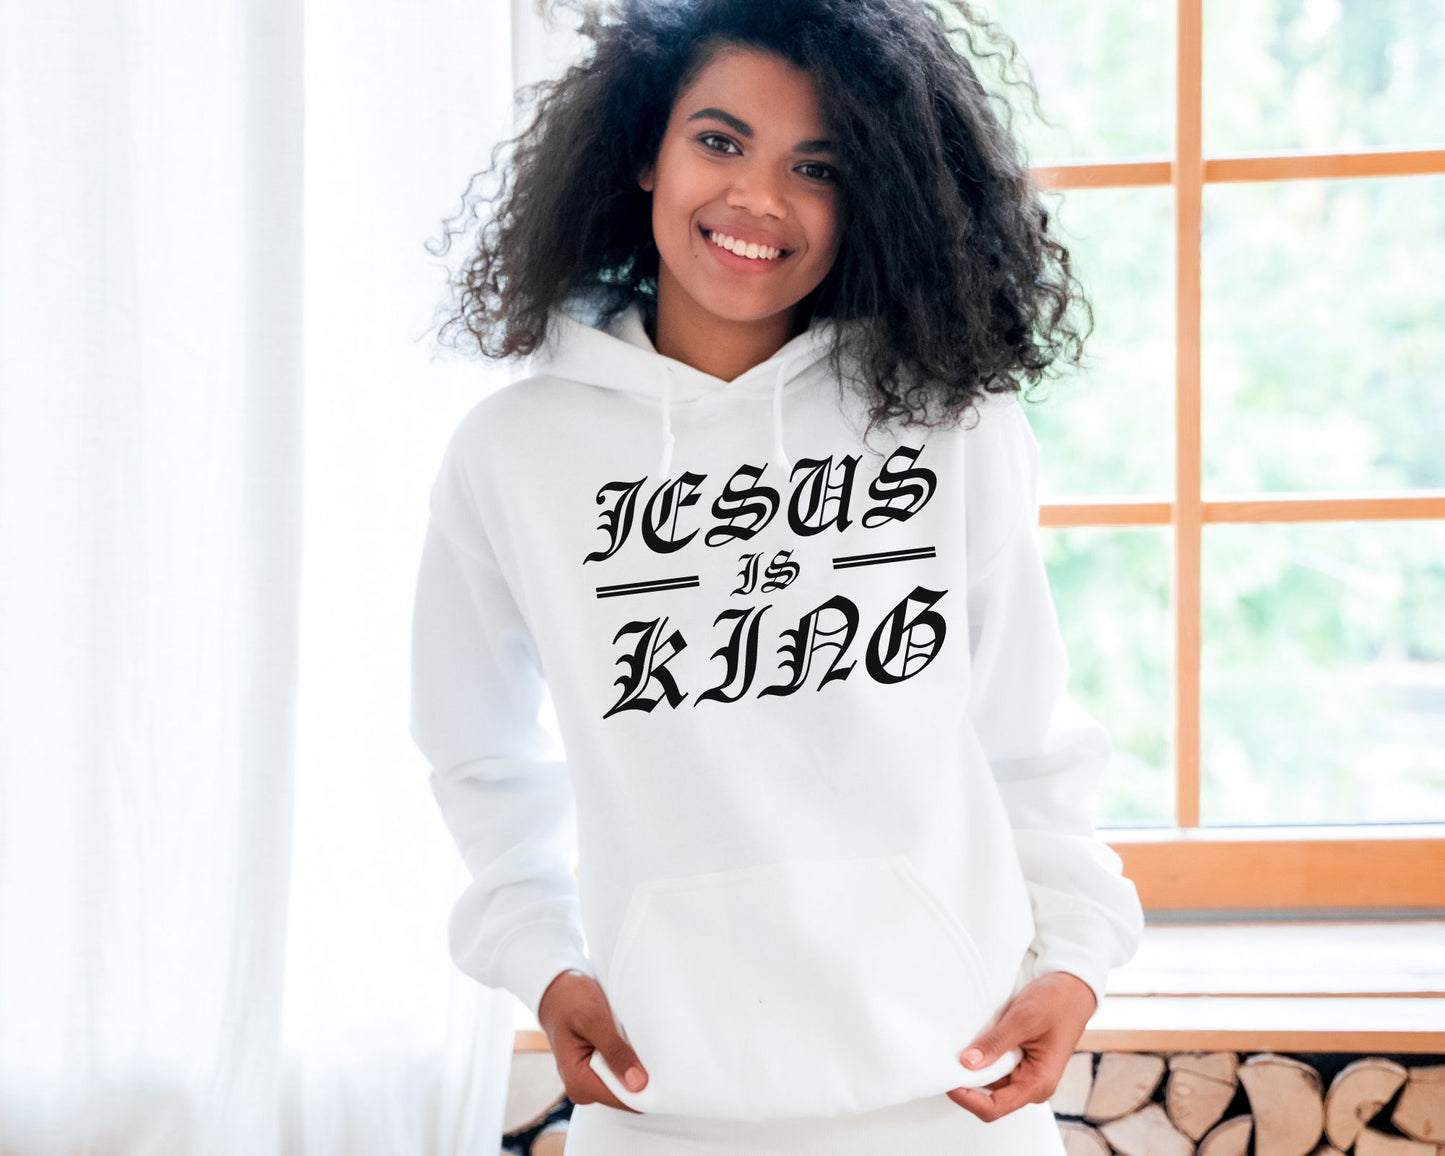 Jesus Is King Womens Hoodie